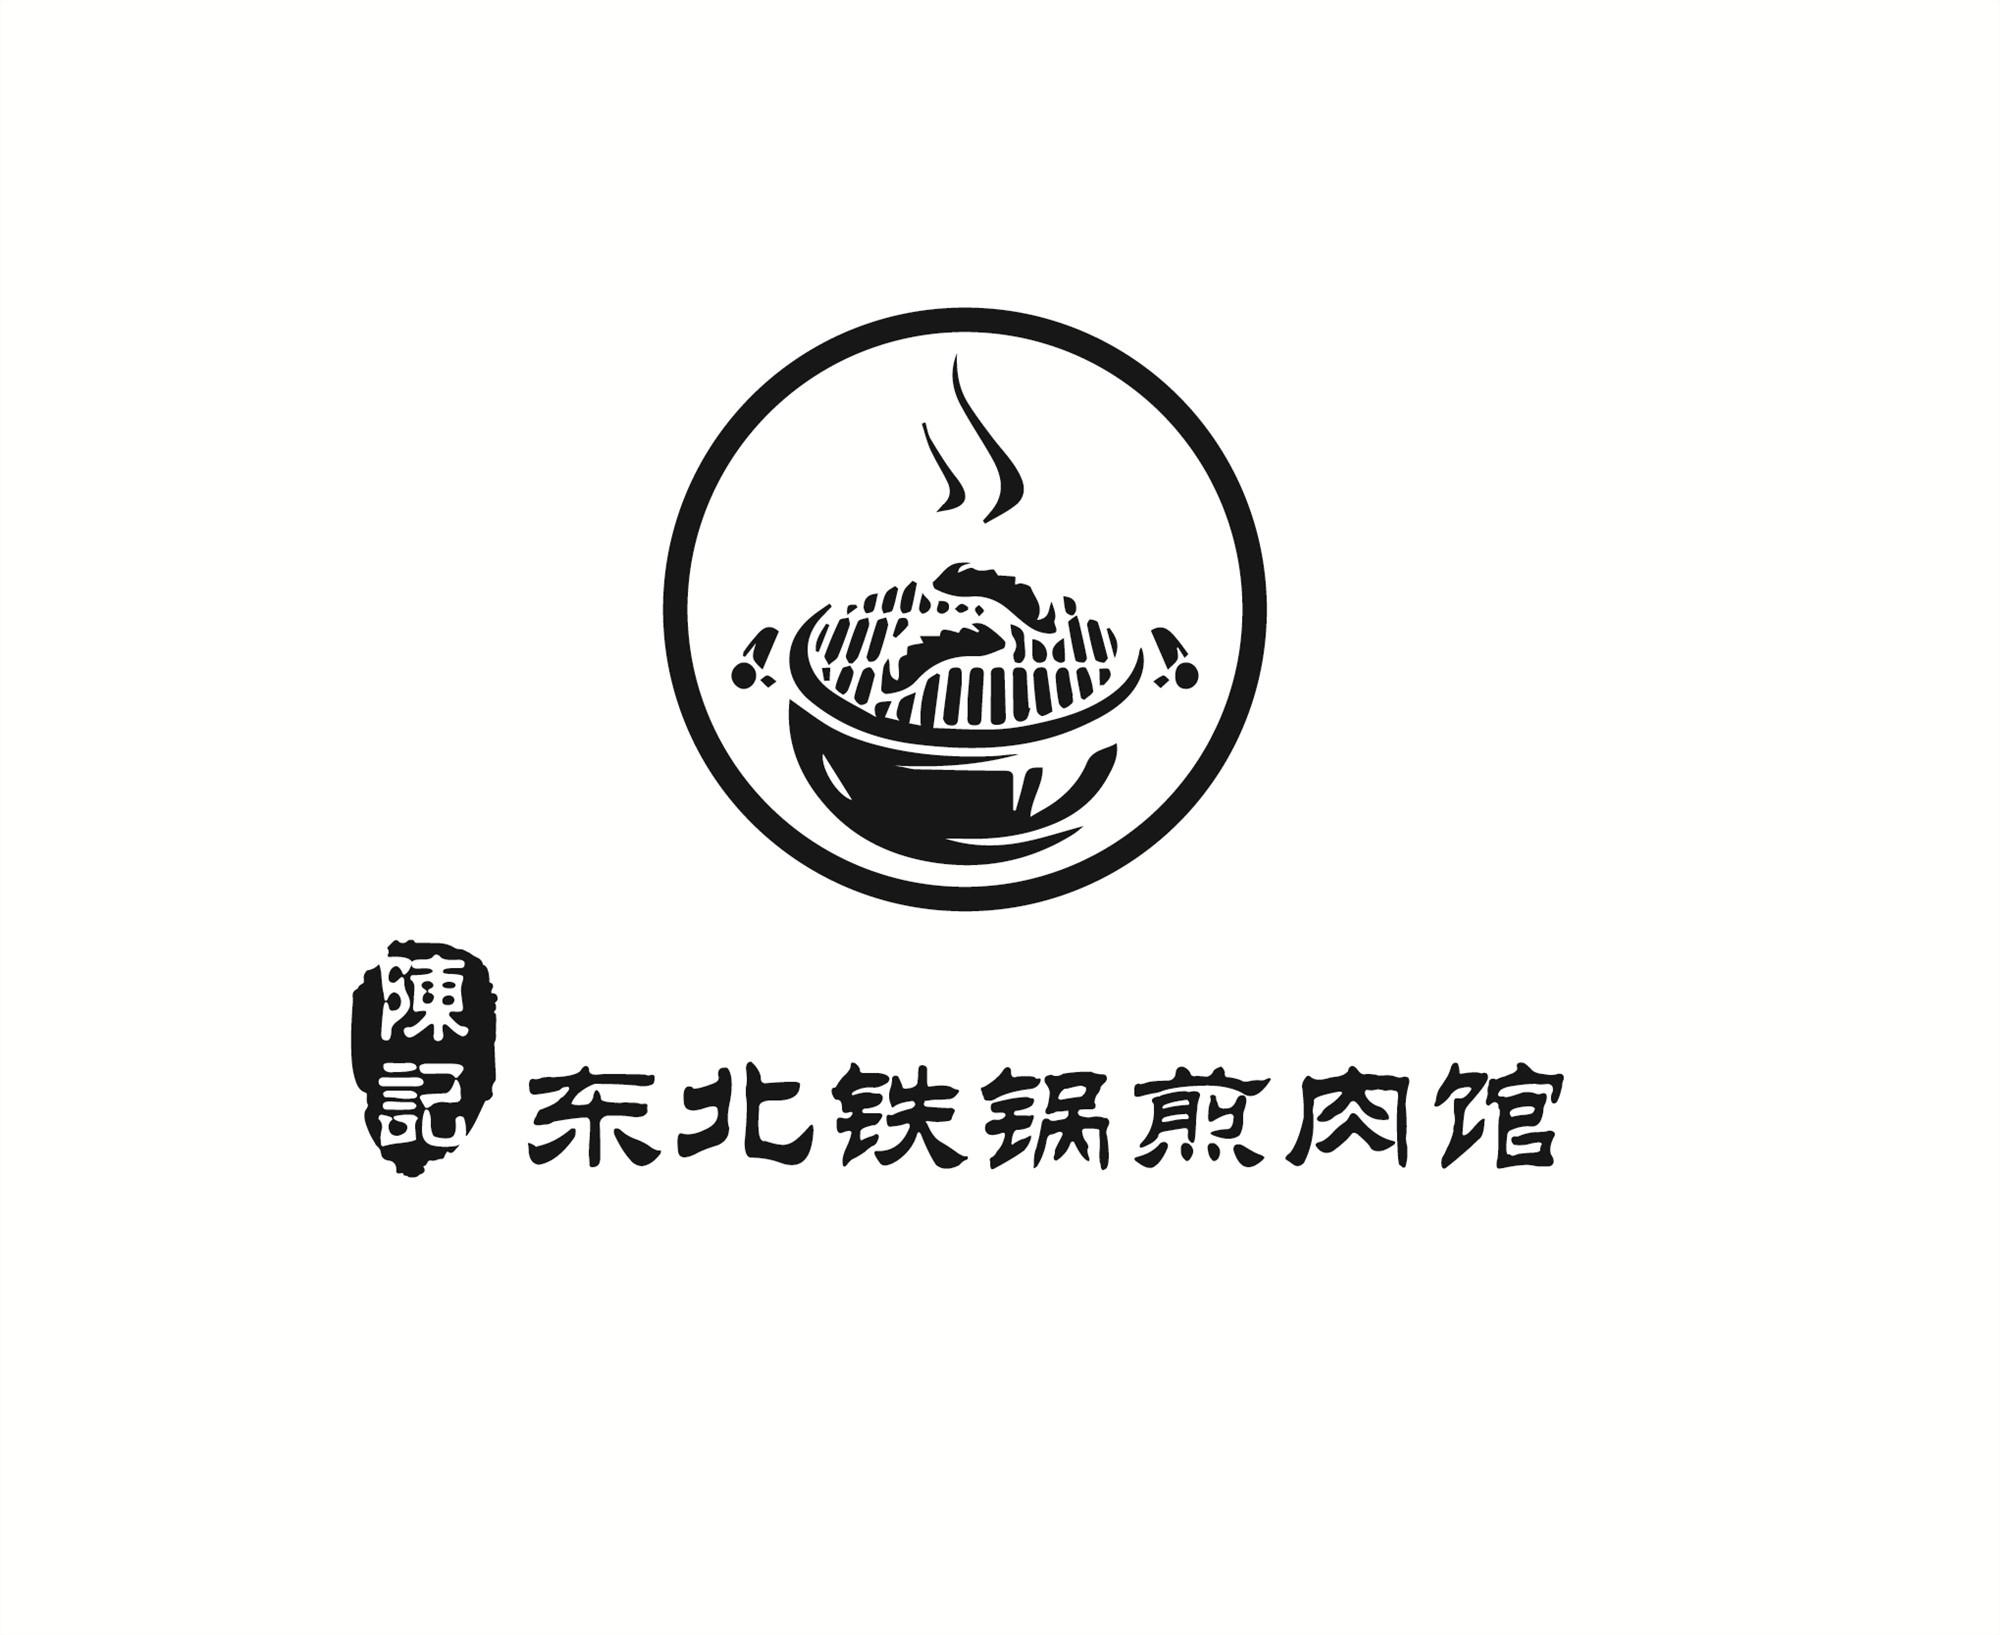 铁锅logo图片大全图片